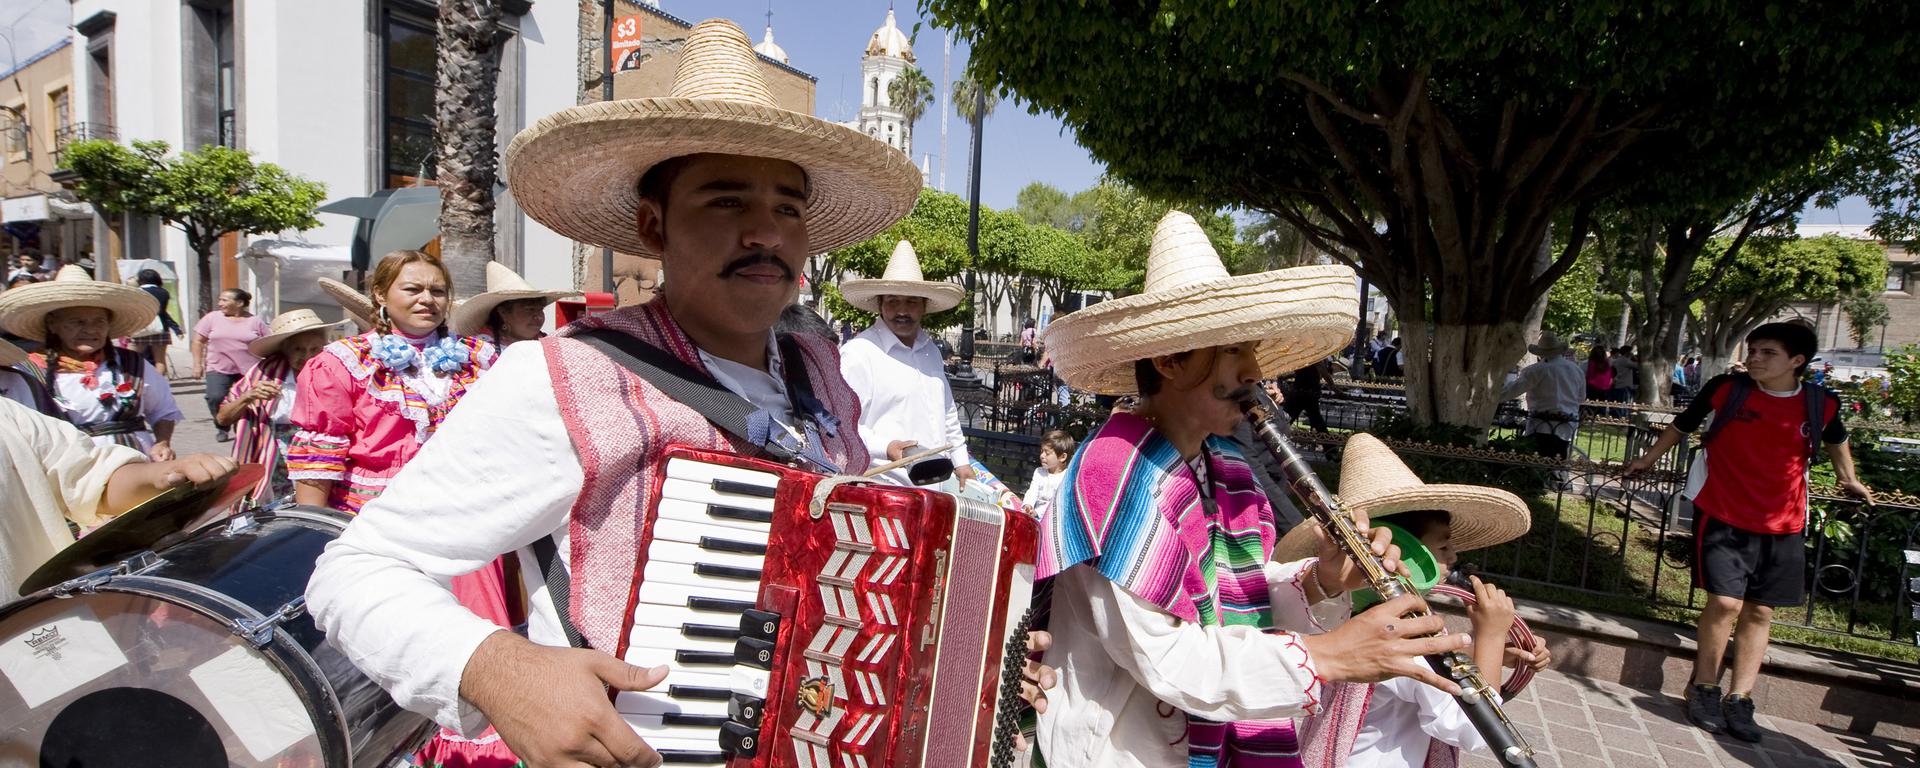 Guadalajara: mariachis, lucha libre y exquisita gastronomía para descubrir en la perla de México 